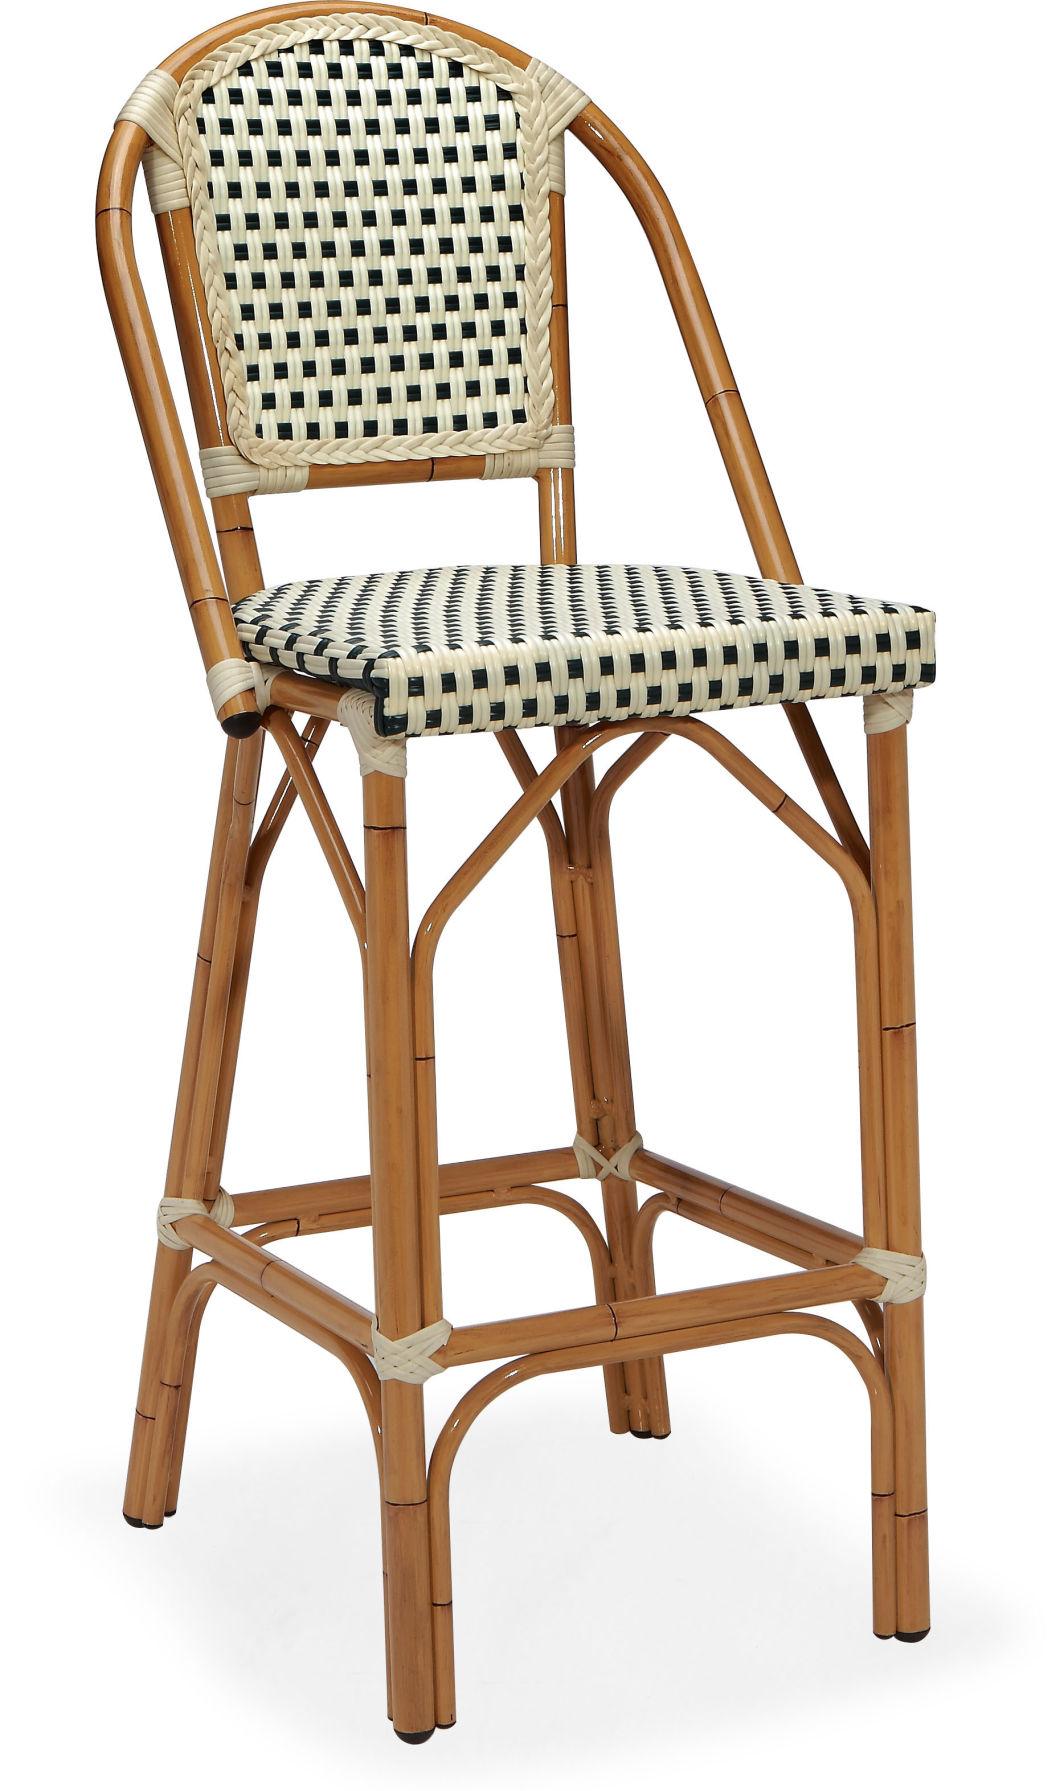 Stacking Garden Chair Aluminum Bambool Look Rattan Chair